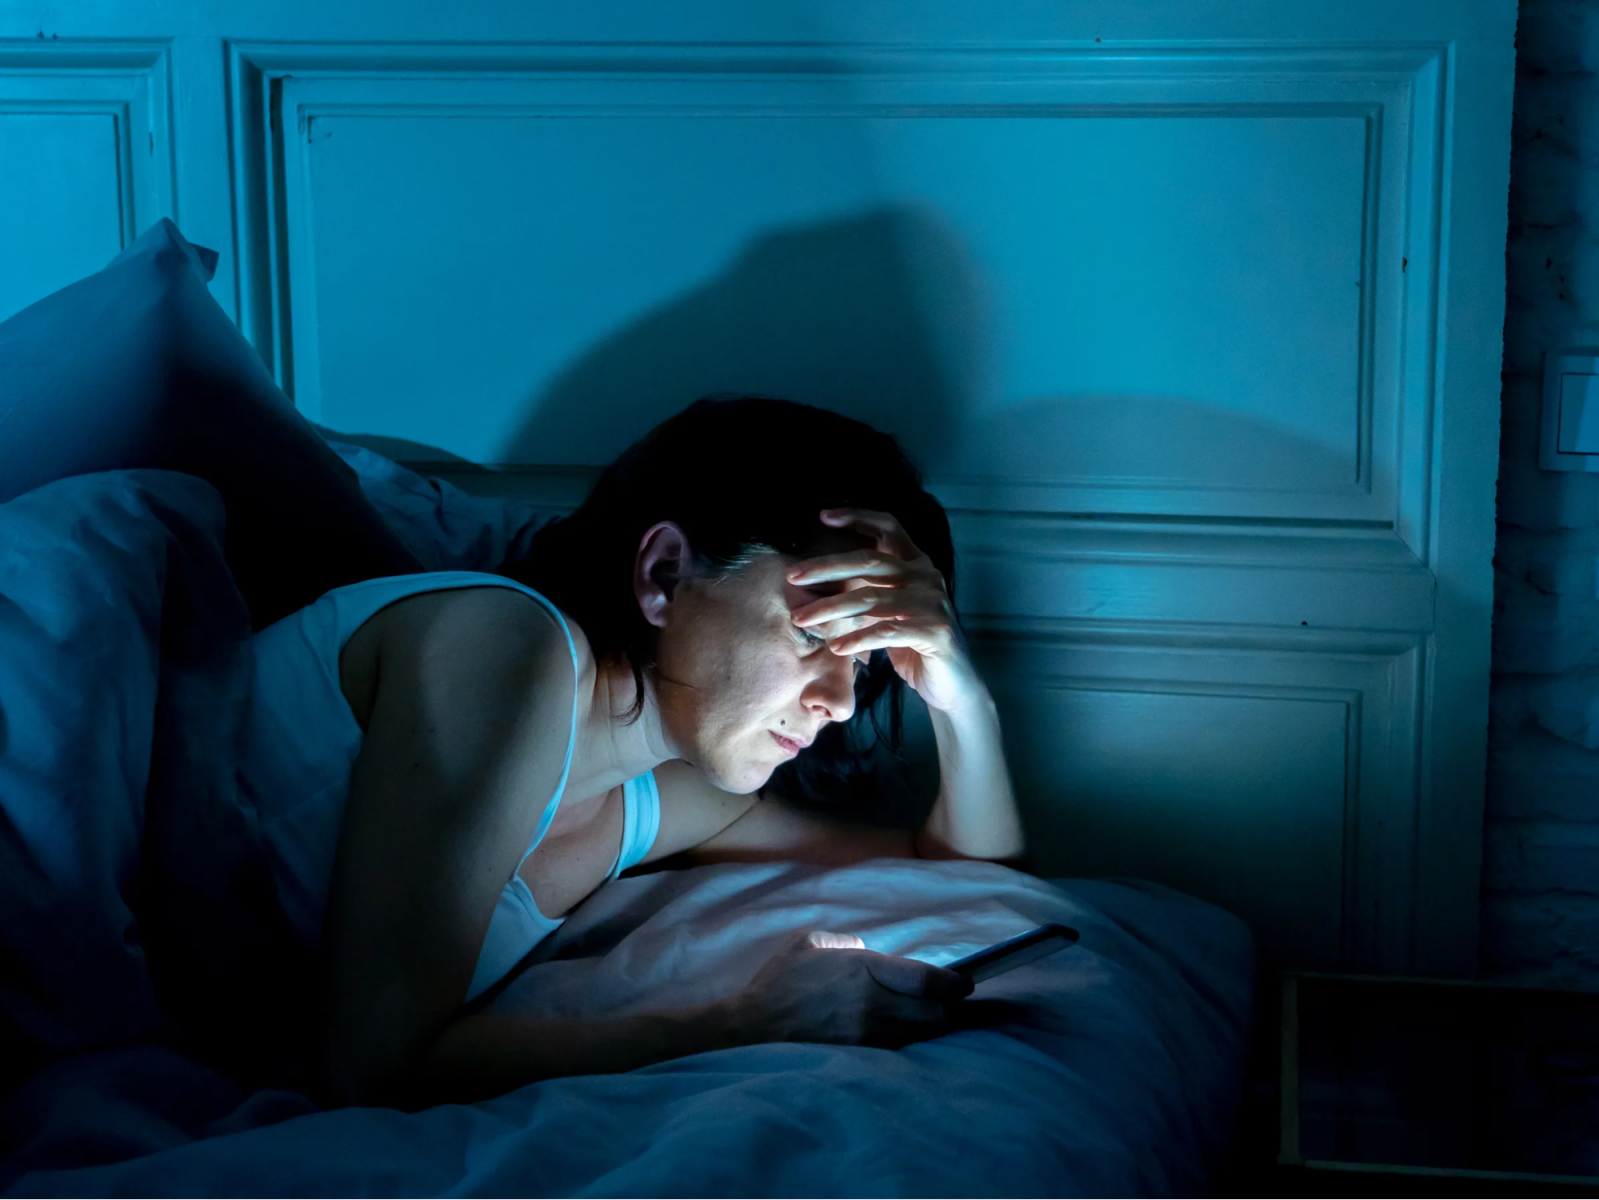 Buồn ngủ nhưng không ngủ được do sử dụng điện thoại trước khi ngủ